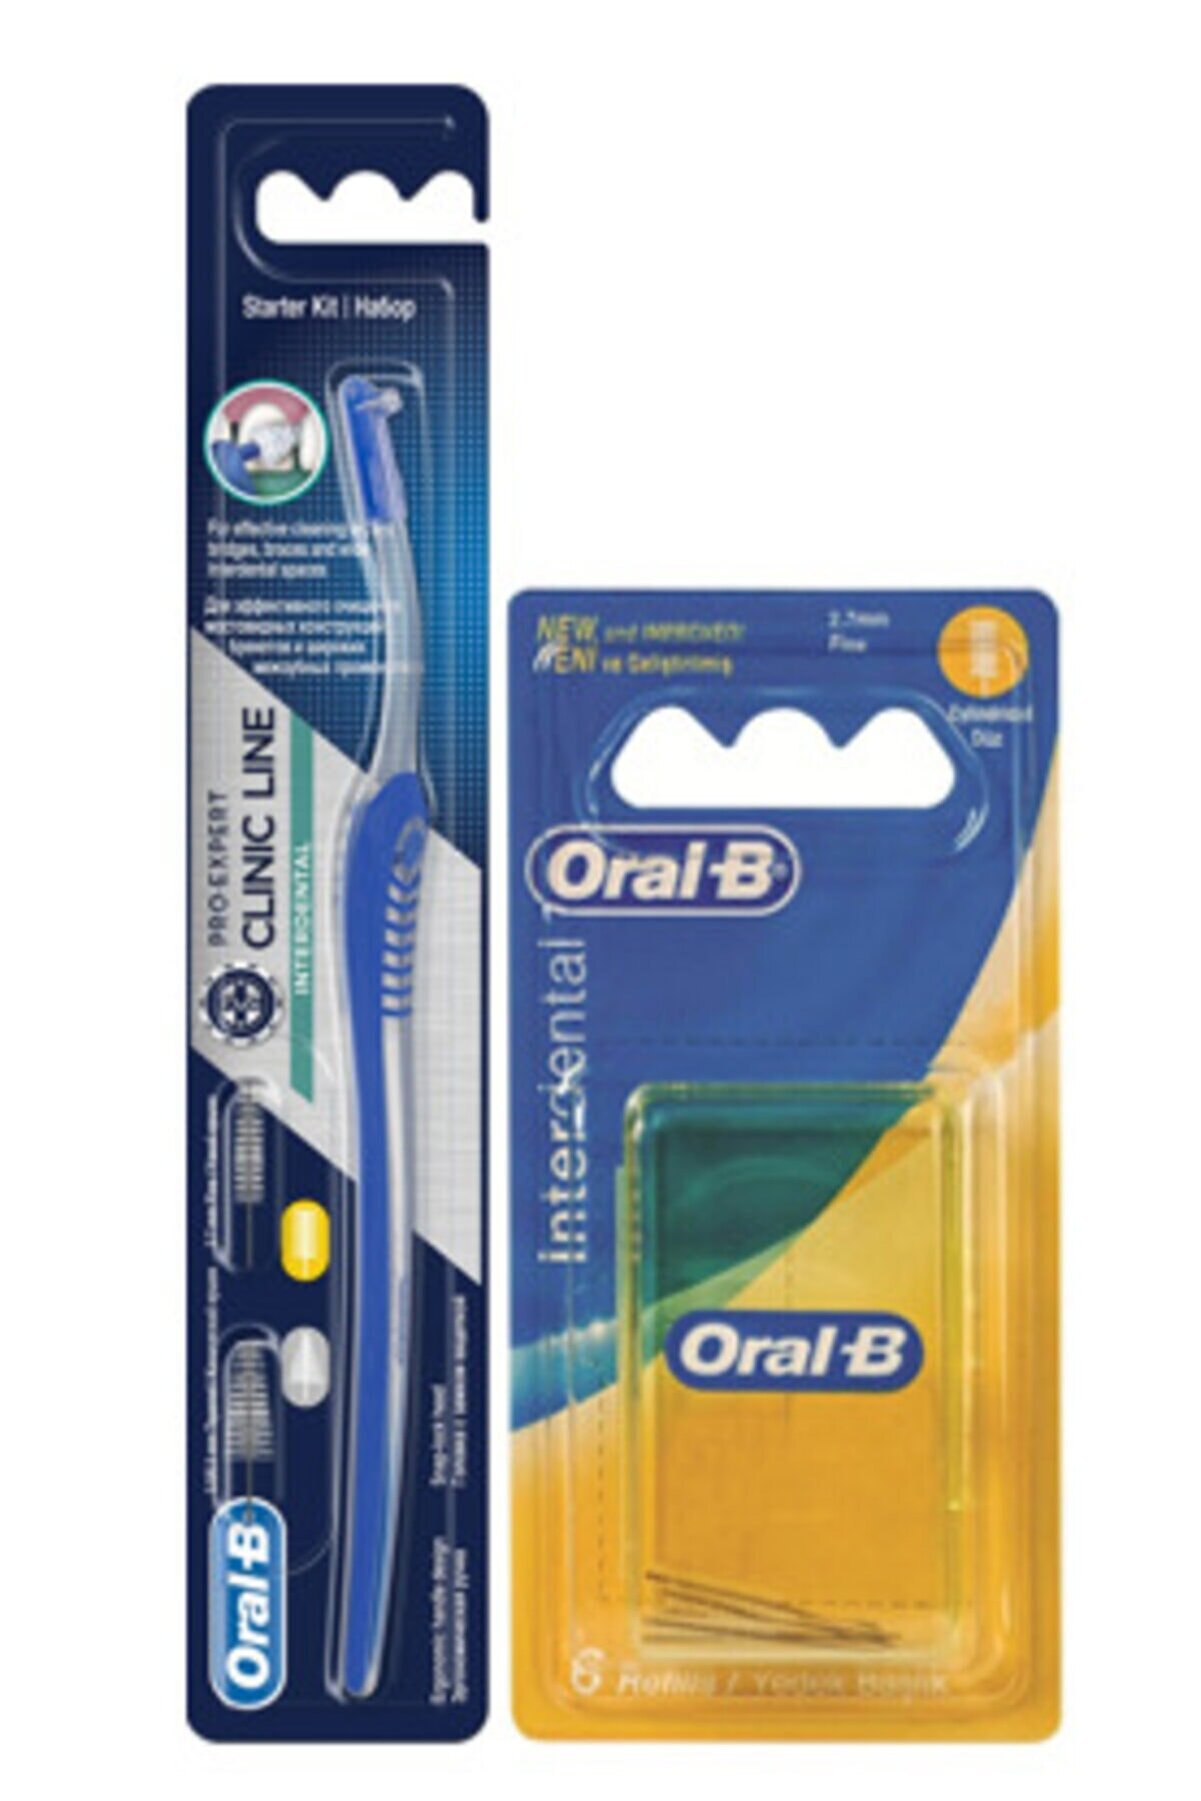 Oral-B Oral B Interdental Arayüz Fırçası + Arayüz Yedek 2.7mm 6'lı Paket